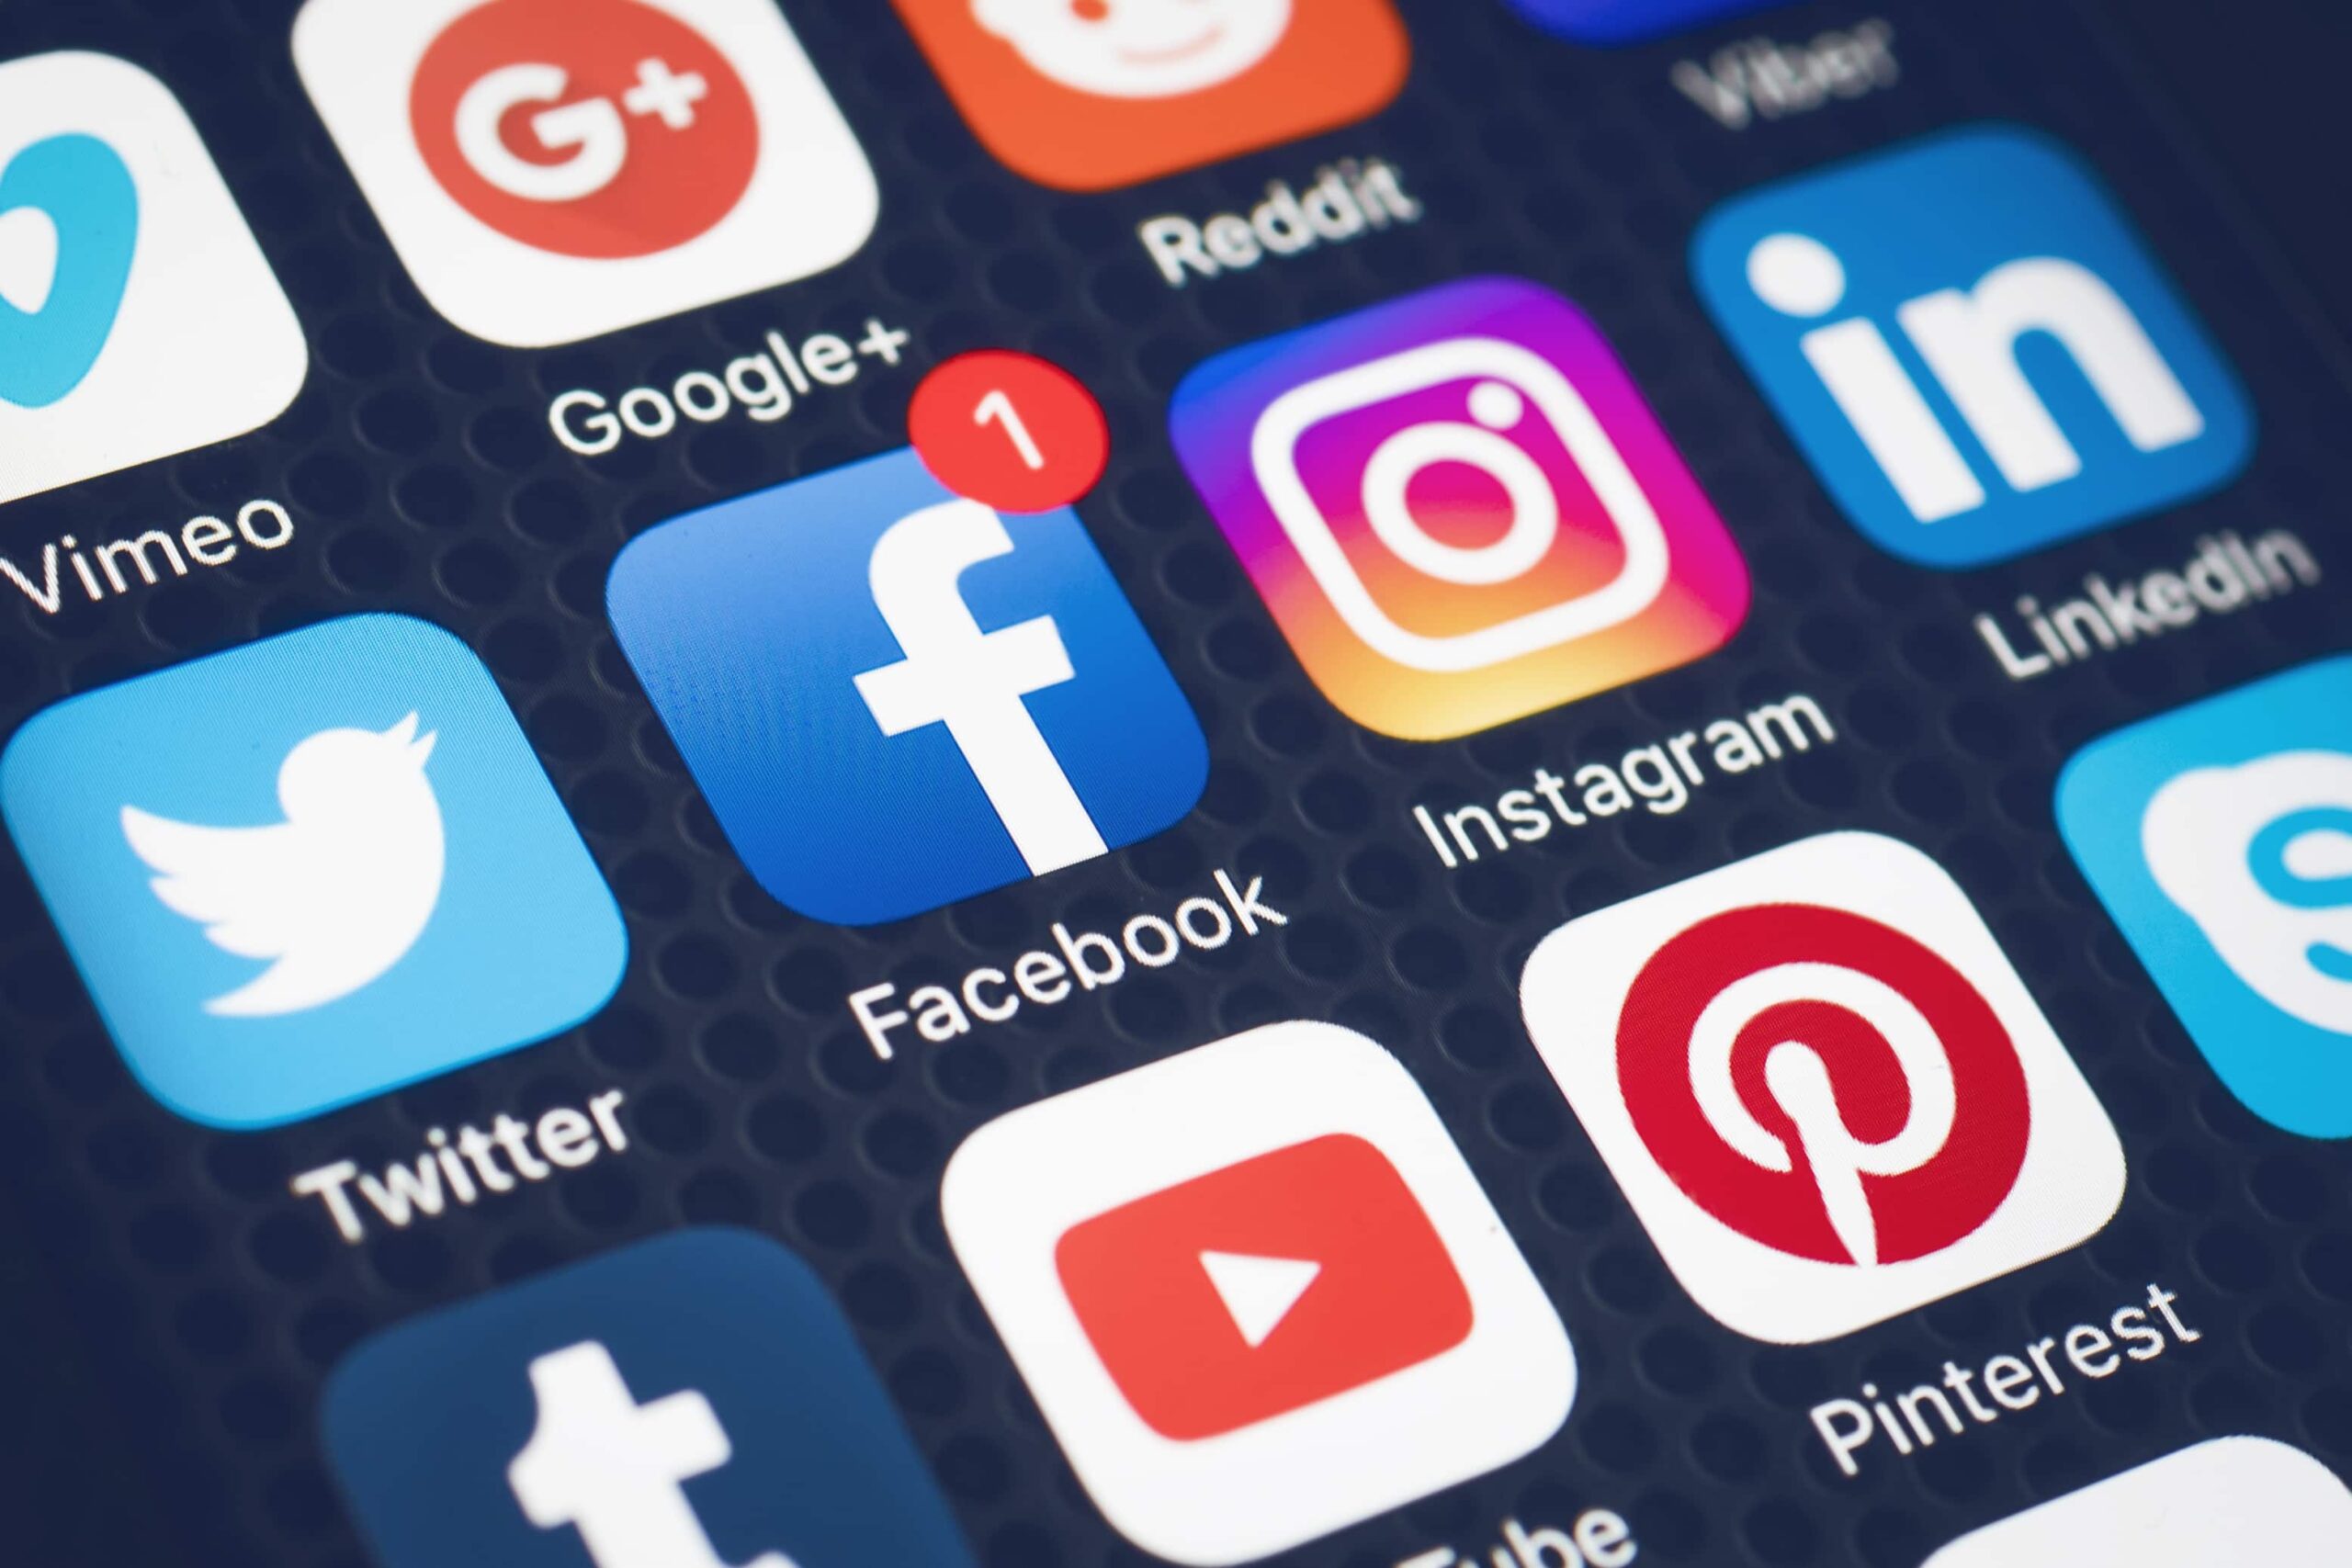 ETF för sociala medier trendar